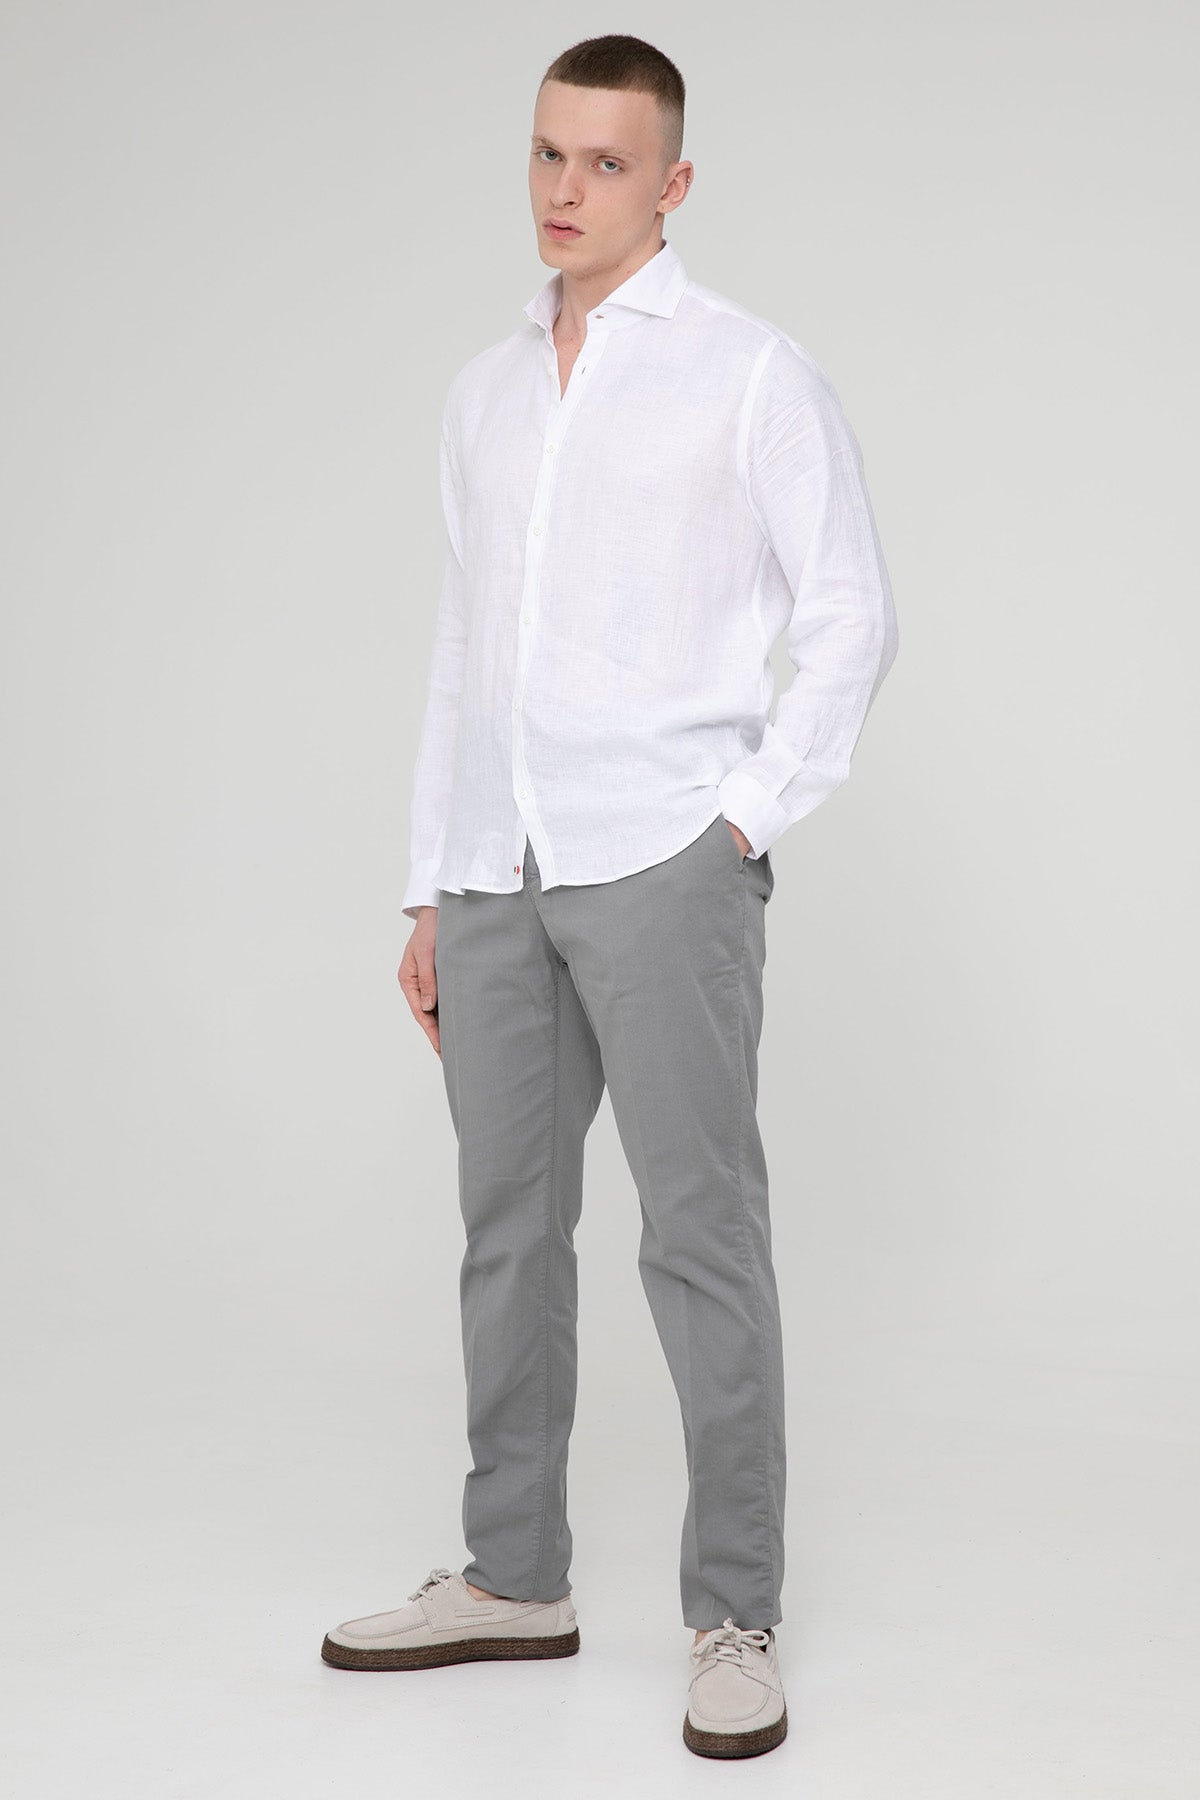 Richard J. Brown Malindi Yandan Cepli Pantolon-Libas Trendy Fashion Store